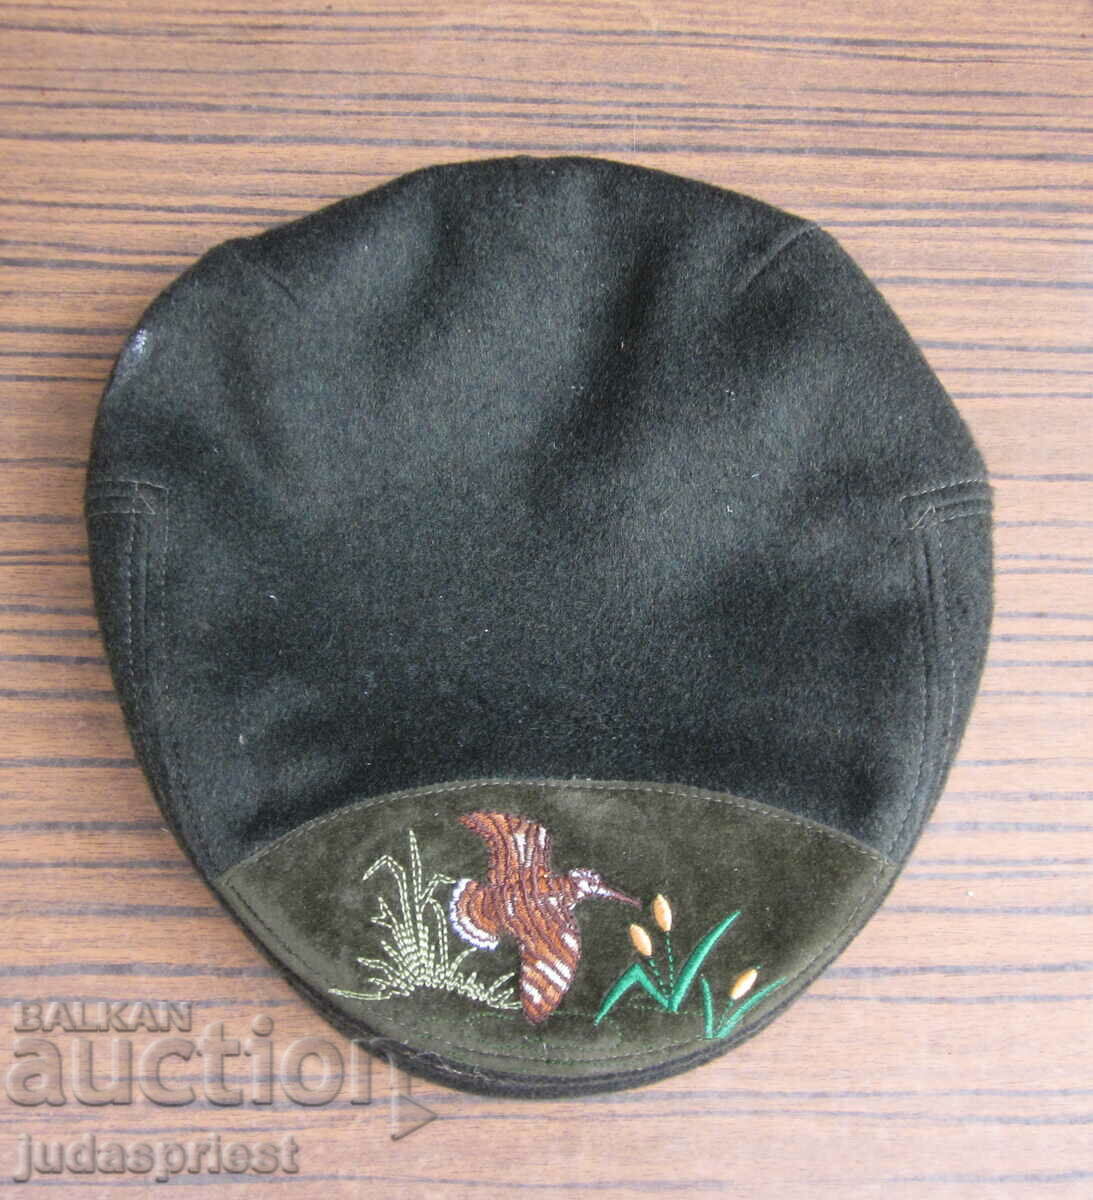 French men's hat men's cap